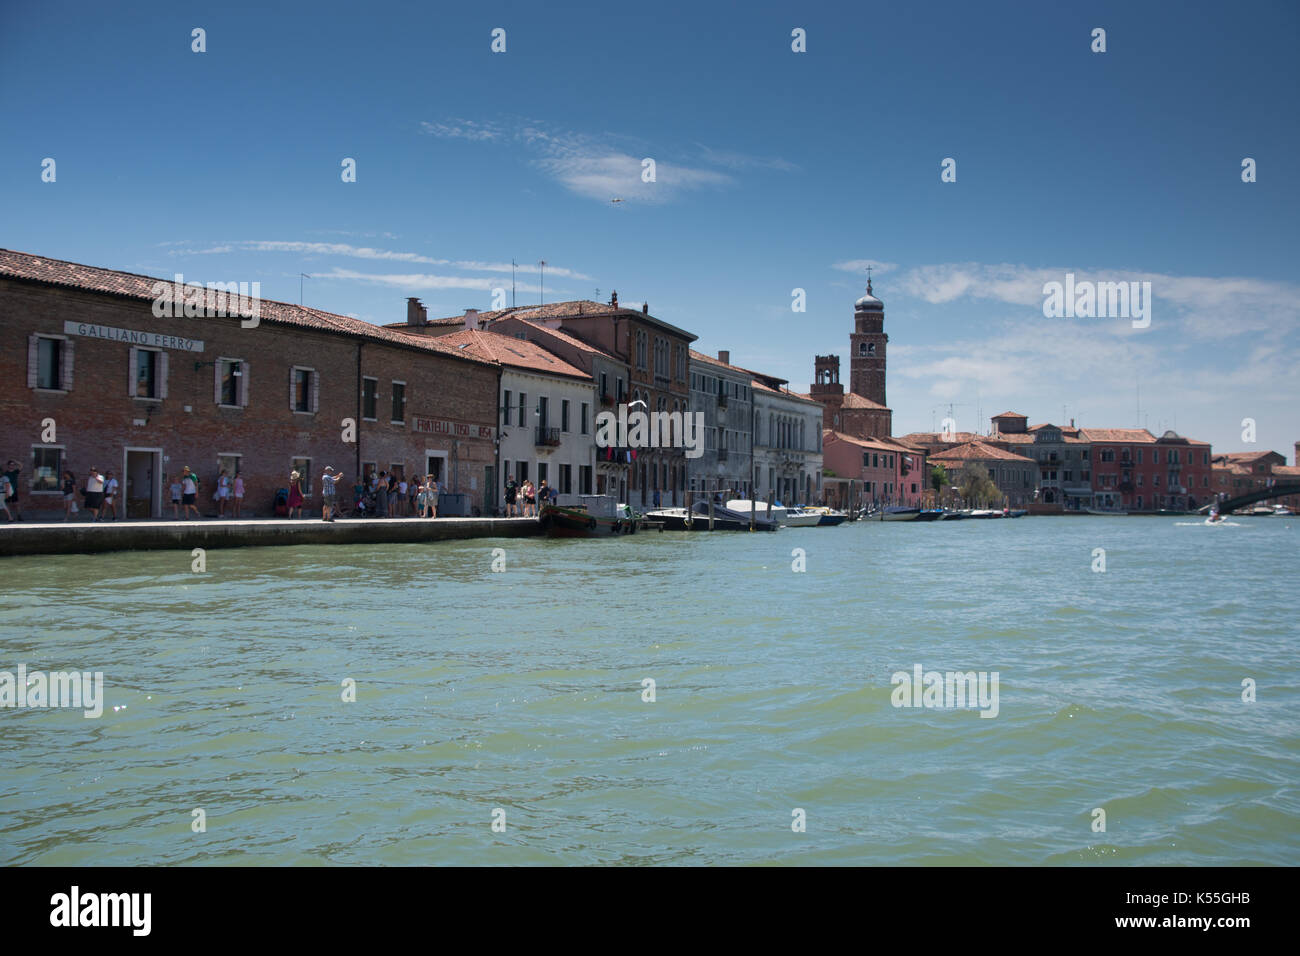 Eine Reise in die antike Stadt von Venedig, Romantisches Wochenende im Meer, malerische Gebäude, Kanäle und Wasserwege Stockfoto